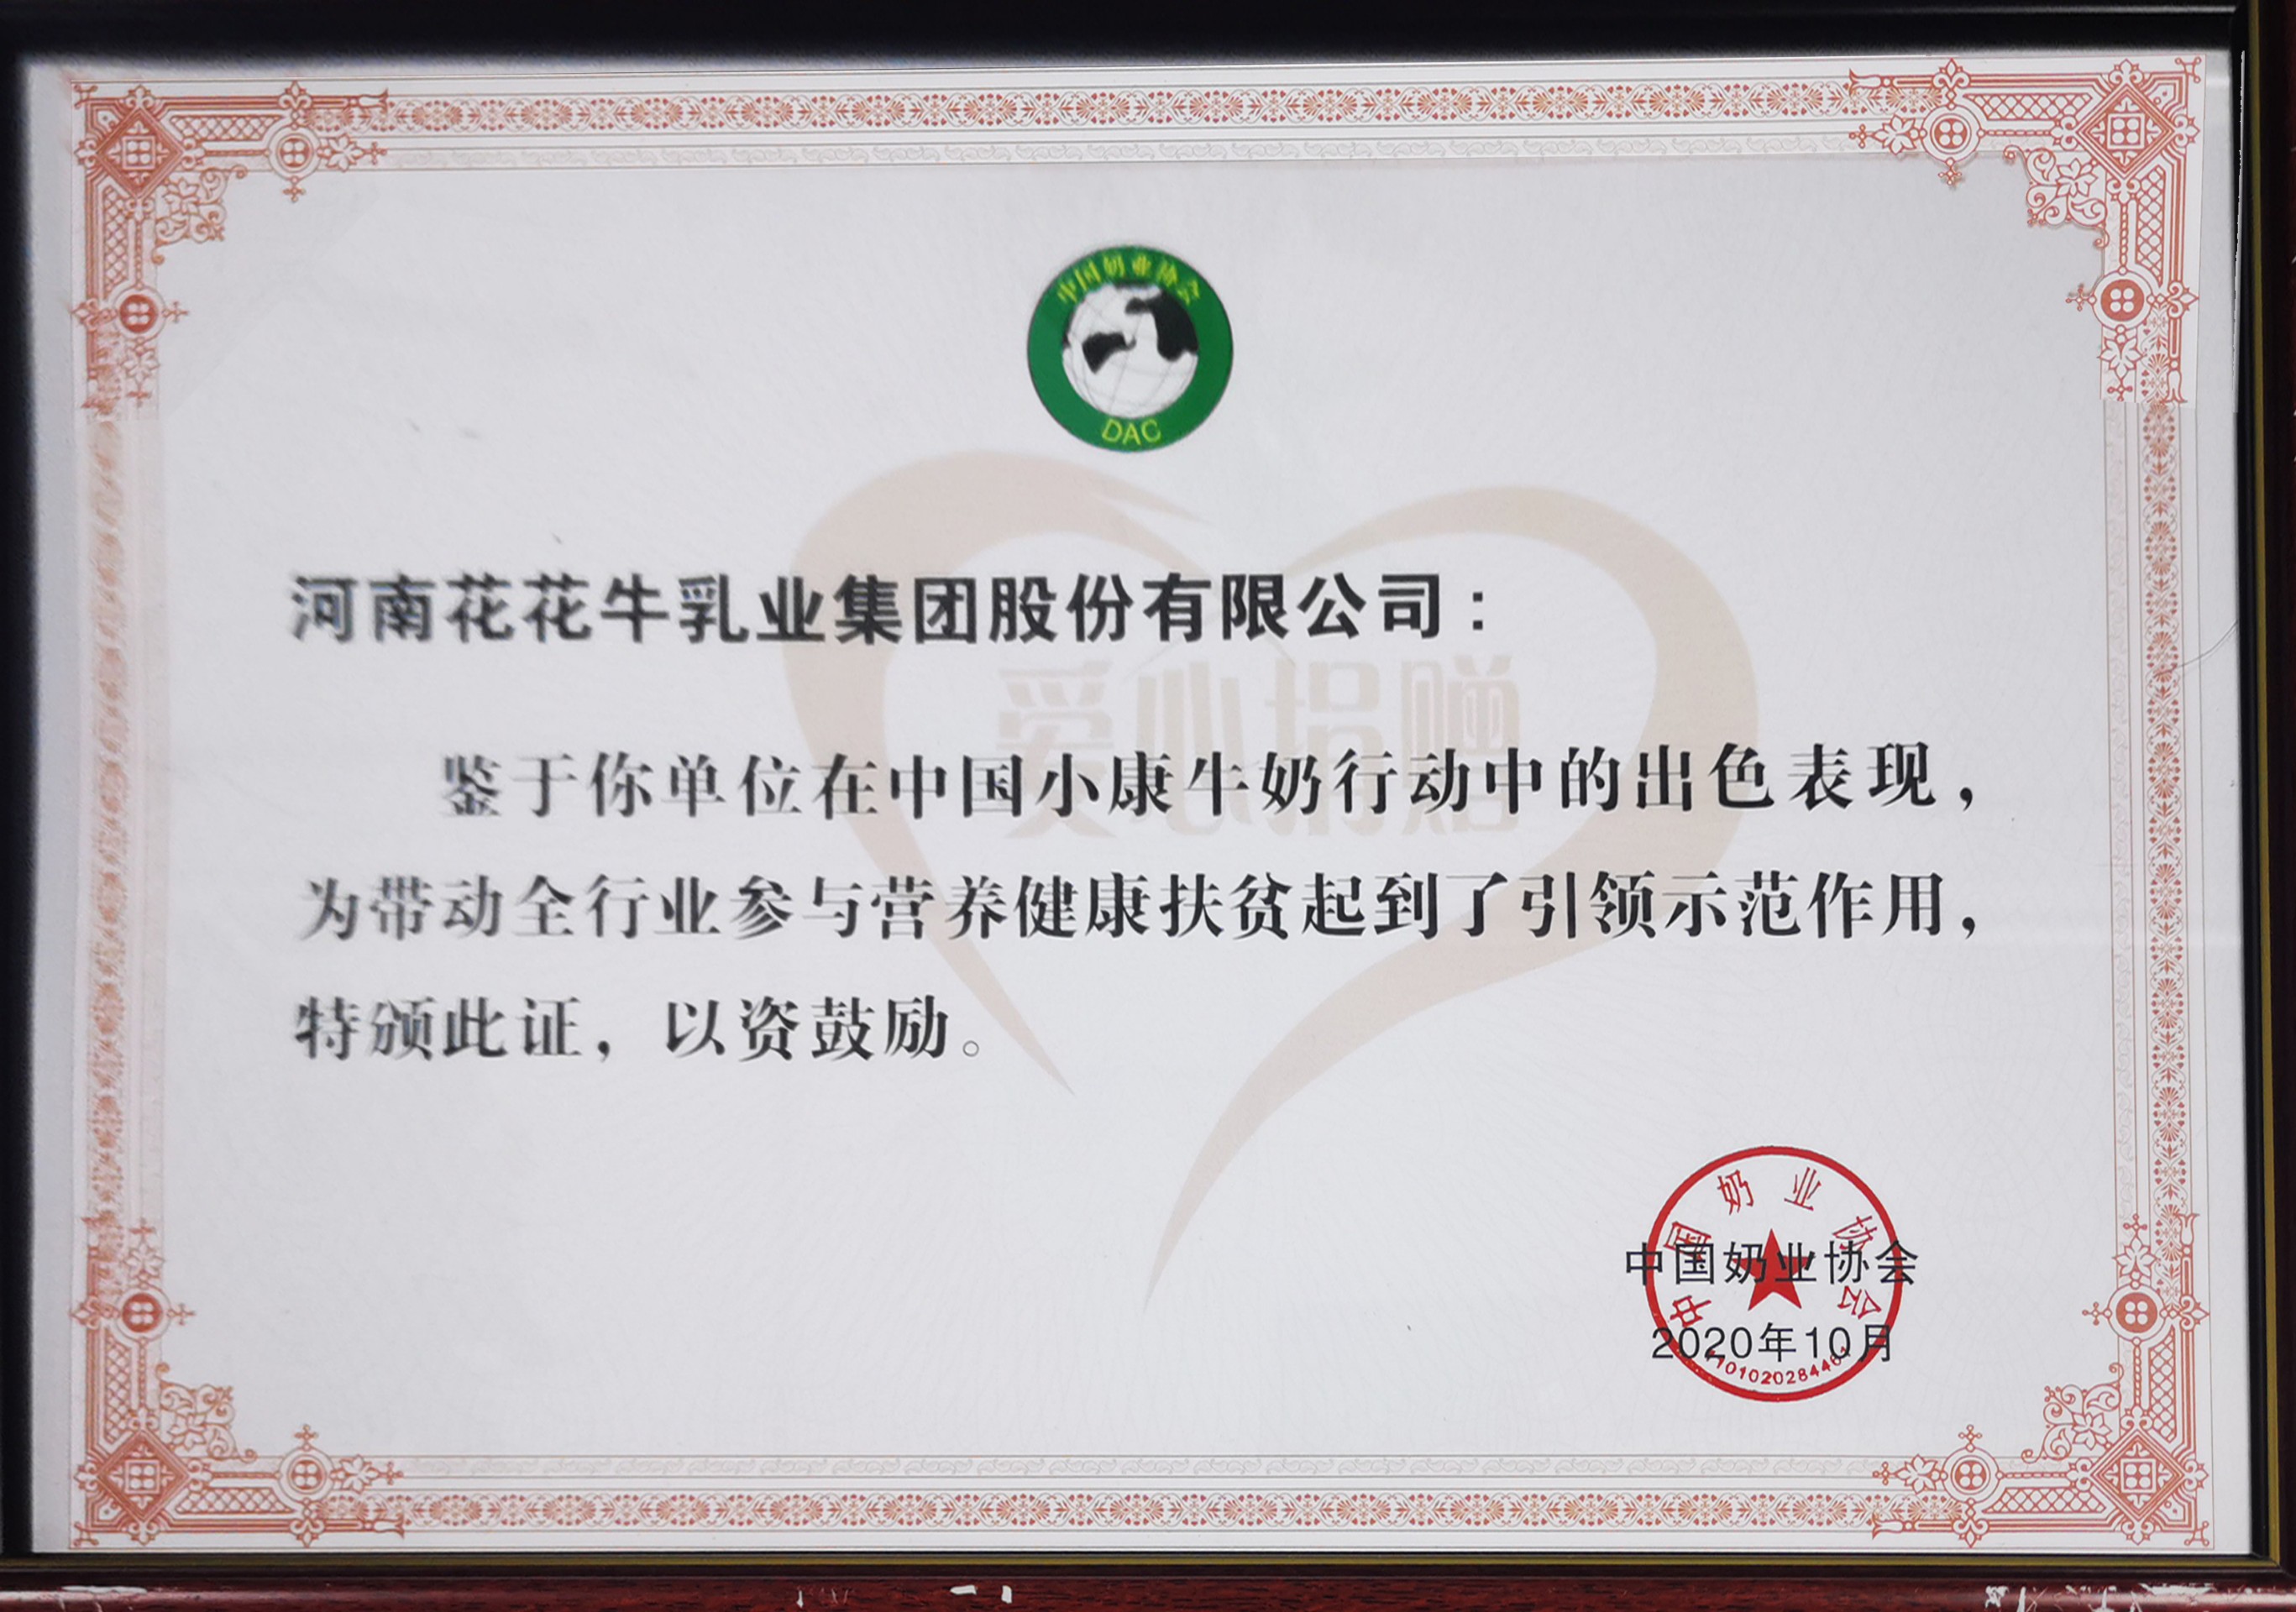 中国小康牛奶行动 · 爱心捐赠企业